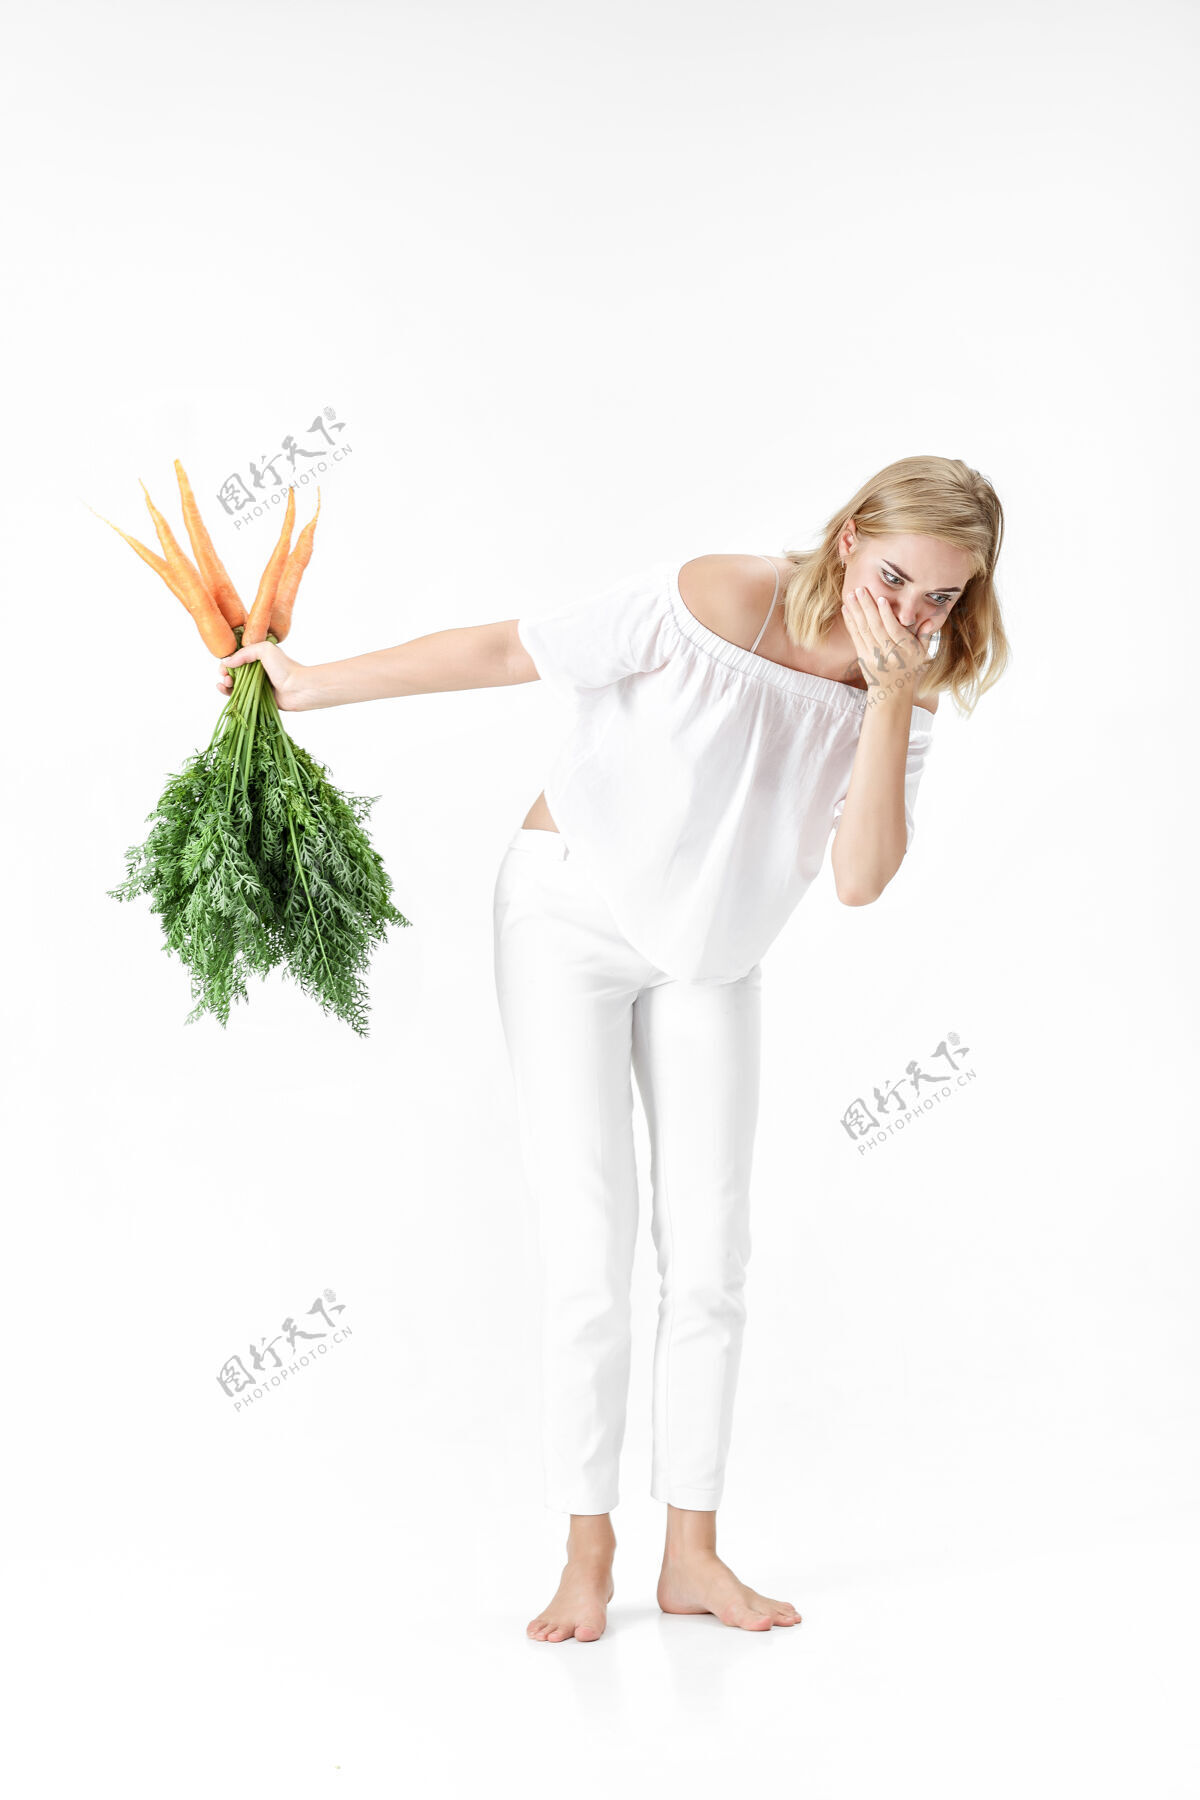 新鲜一个穿着白衬衫的金发女人 手里拿着一根白衬衫上有绿叶的胡萝卜背景女孩吃胡萝卜和节食的感觉不好美丽生欢呼